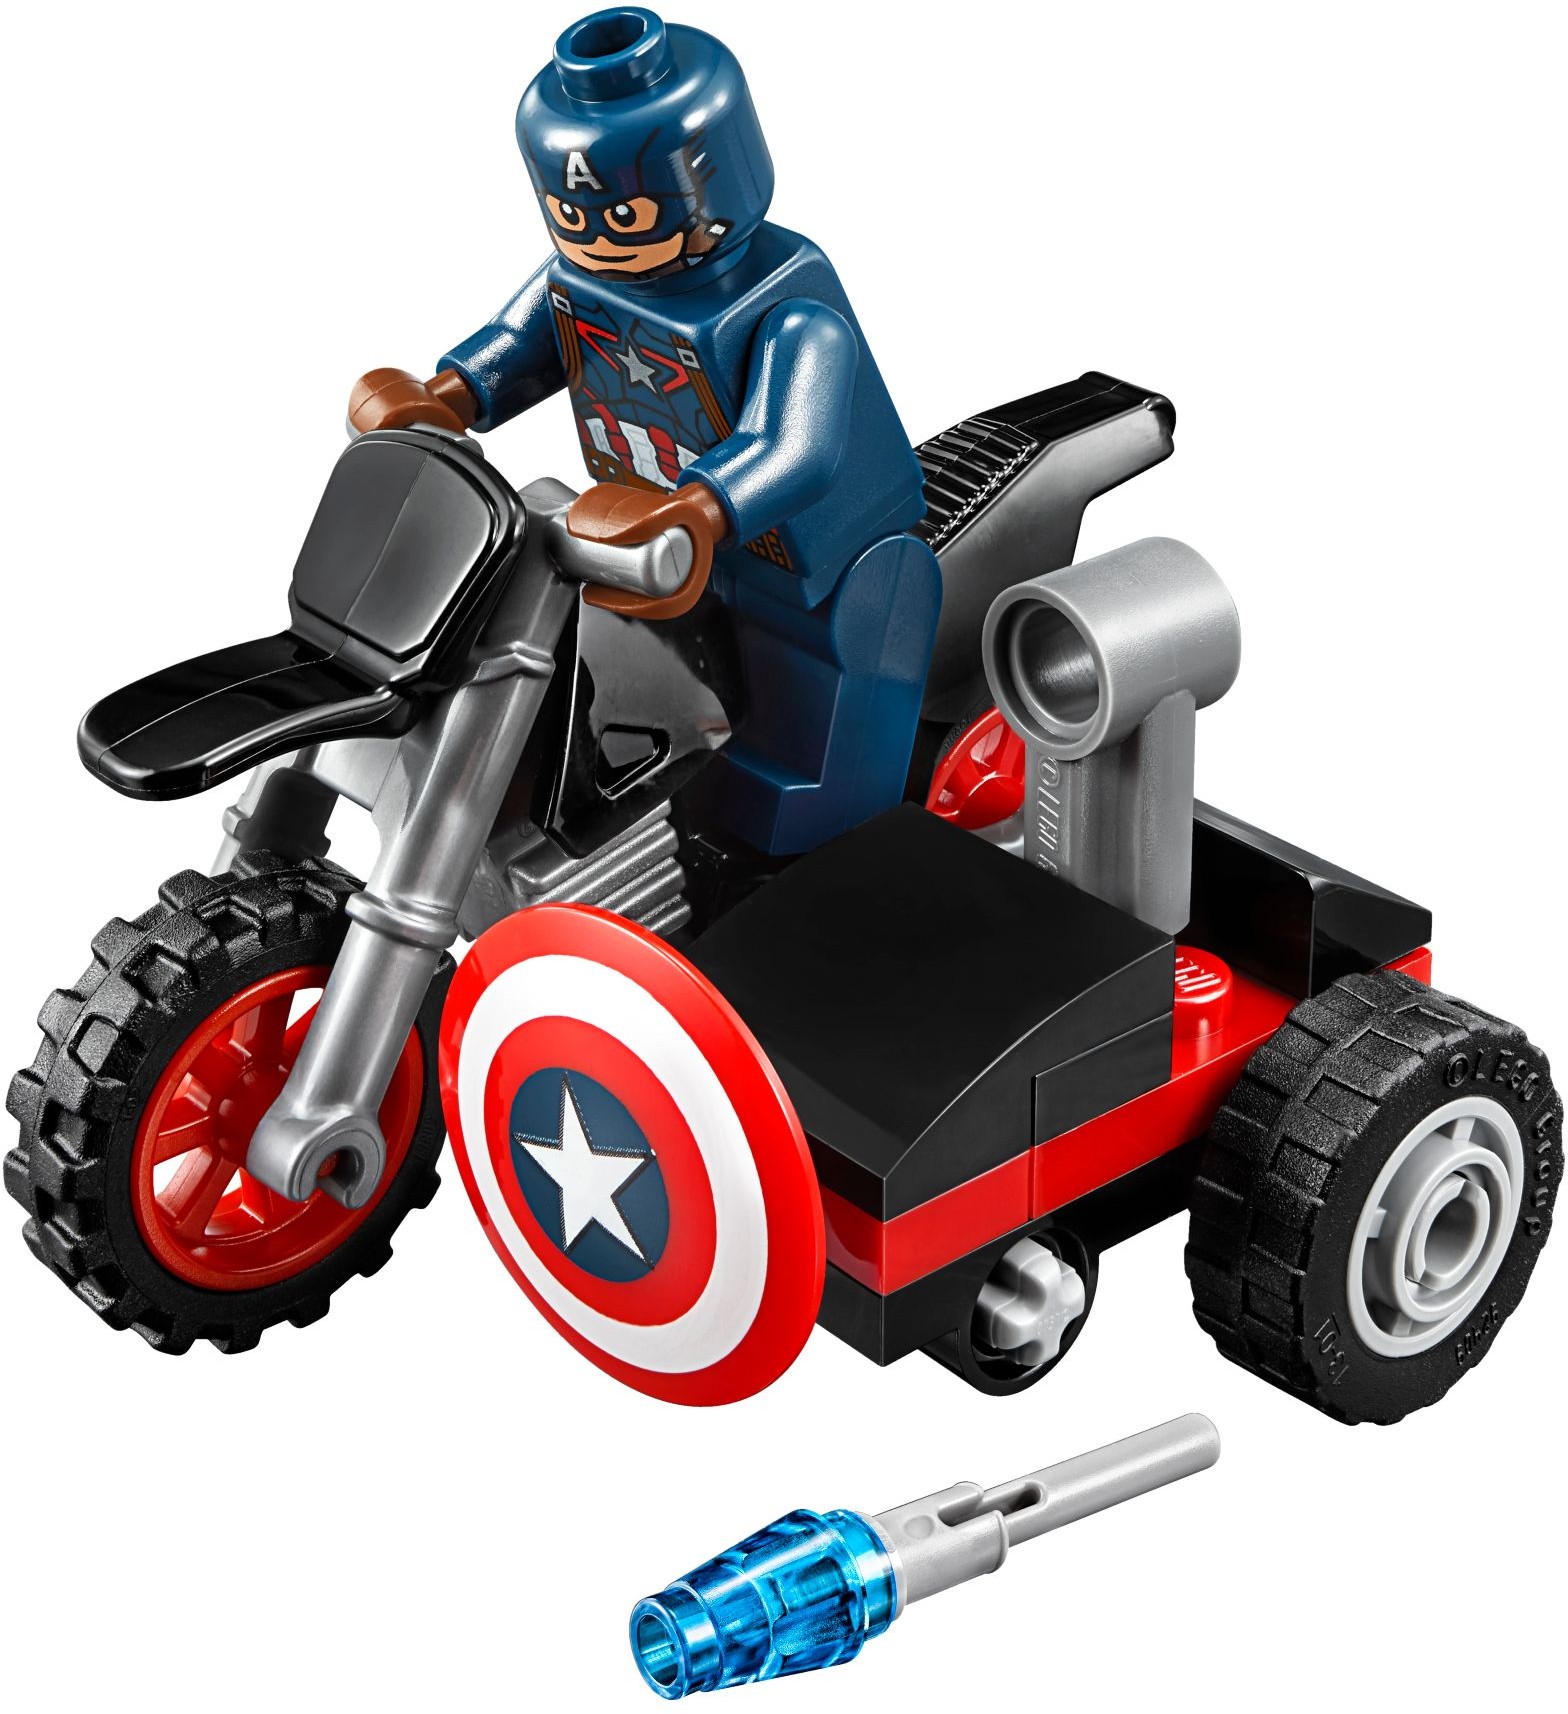 fjende vulkansk Zoologisk have LEGO Marvel Super Heroes Captain America Civil War | Brickset